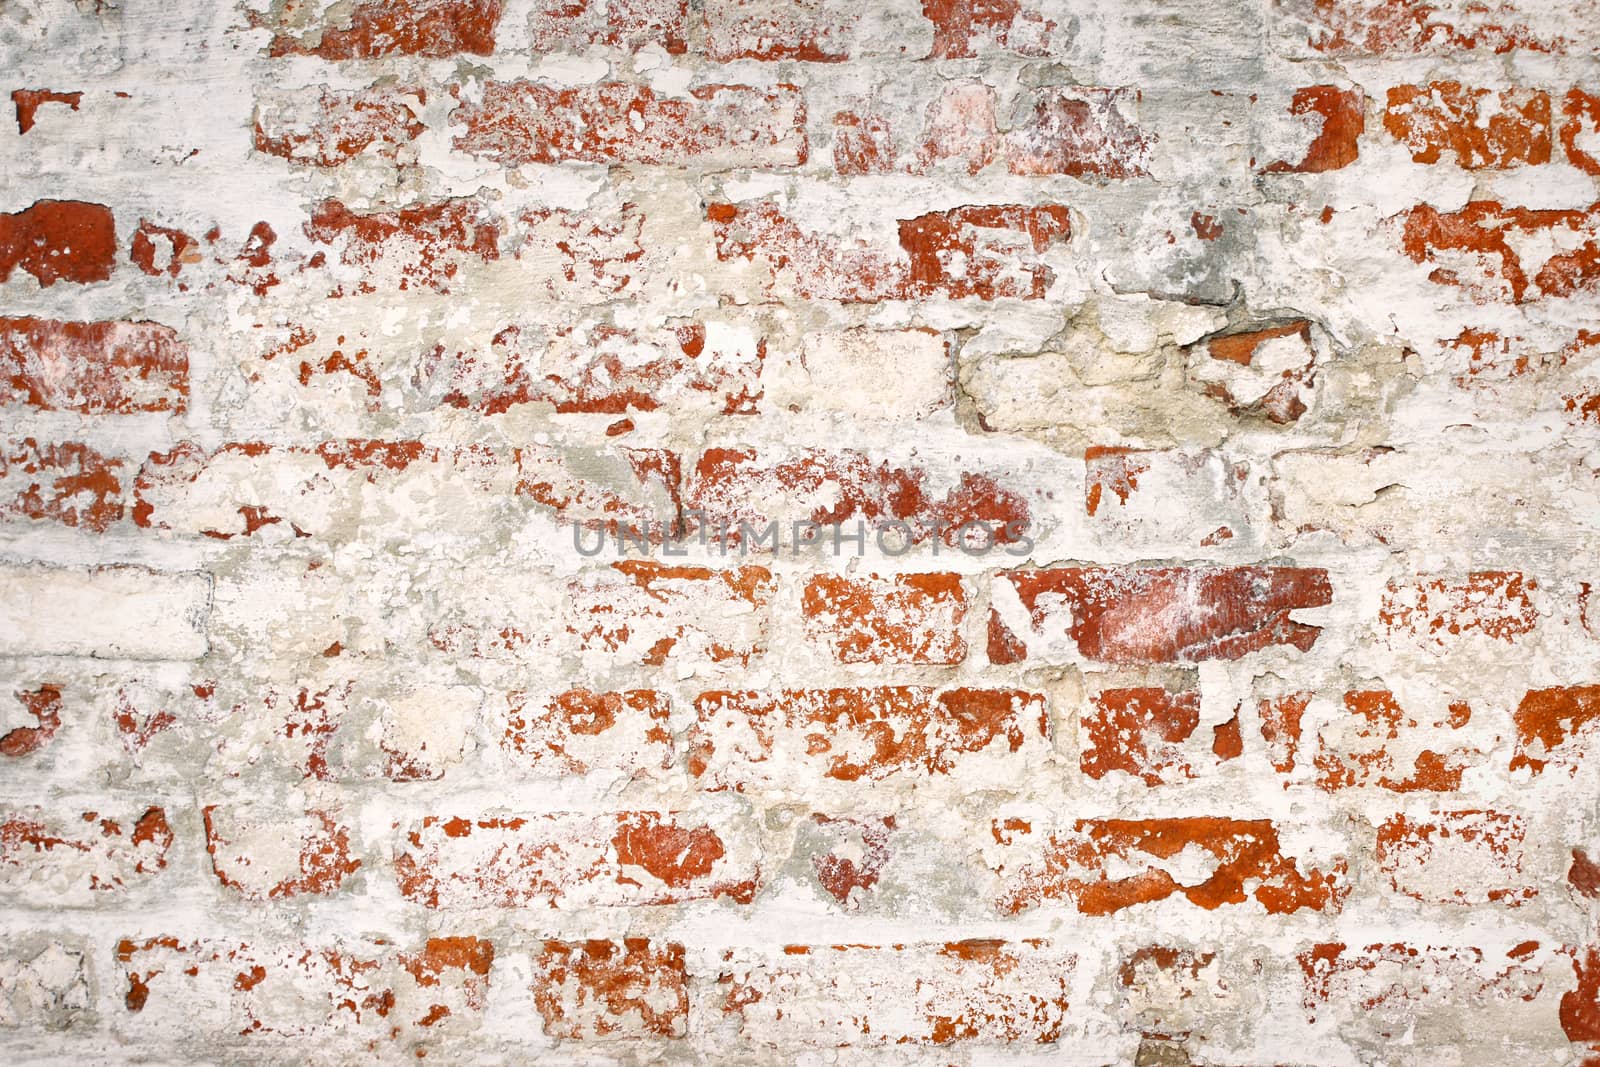 urban background grunge wall texture of red bricks